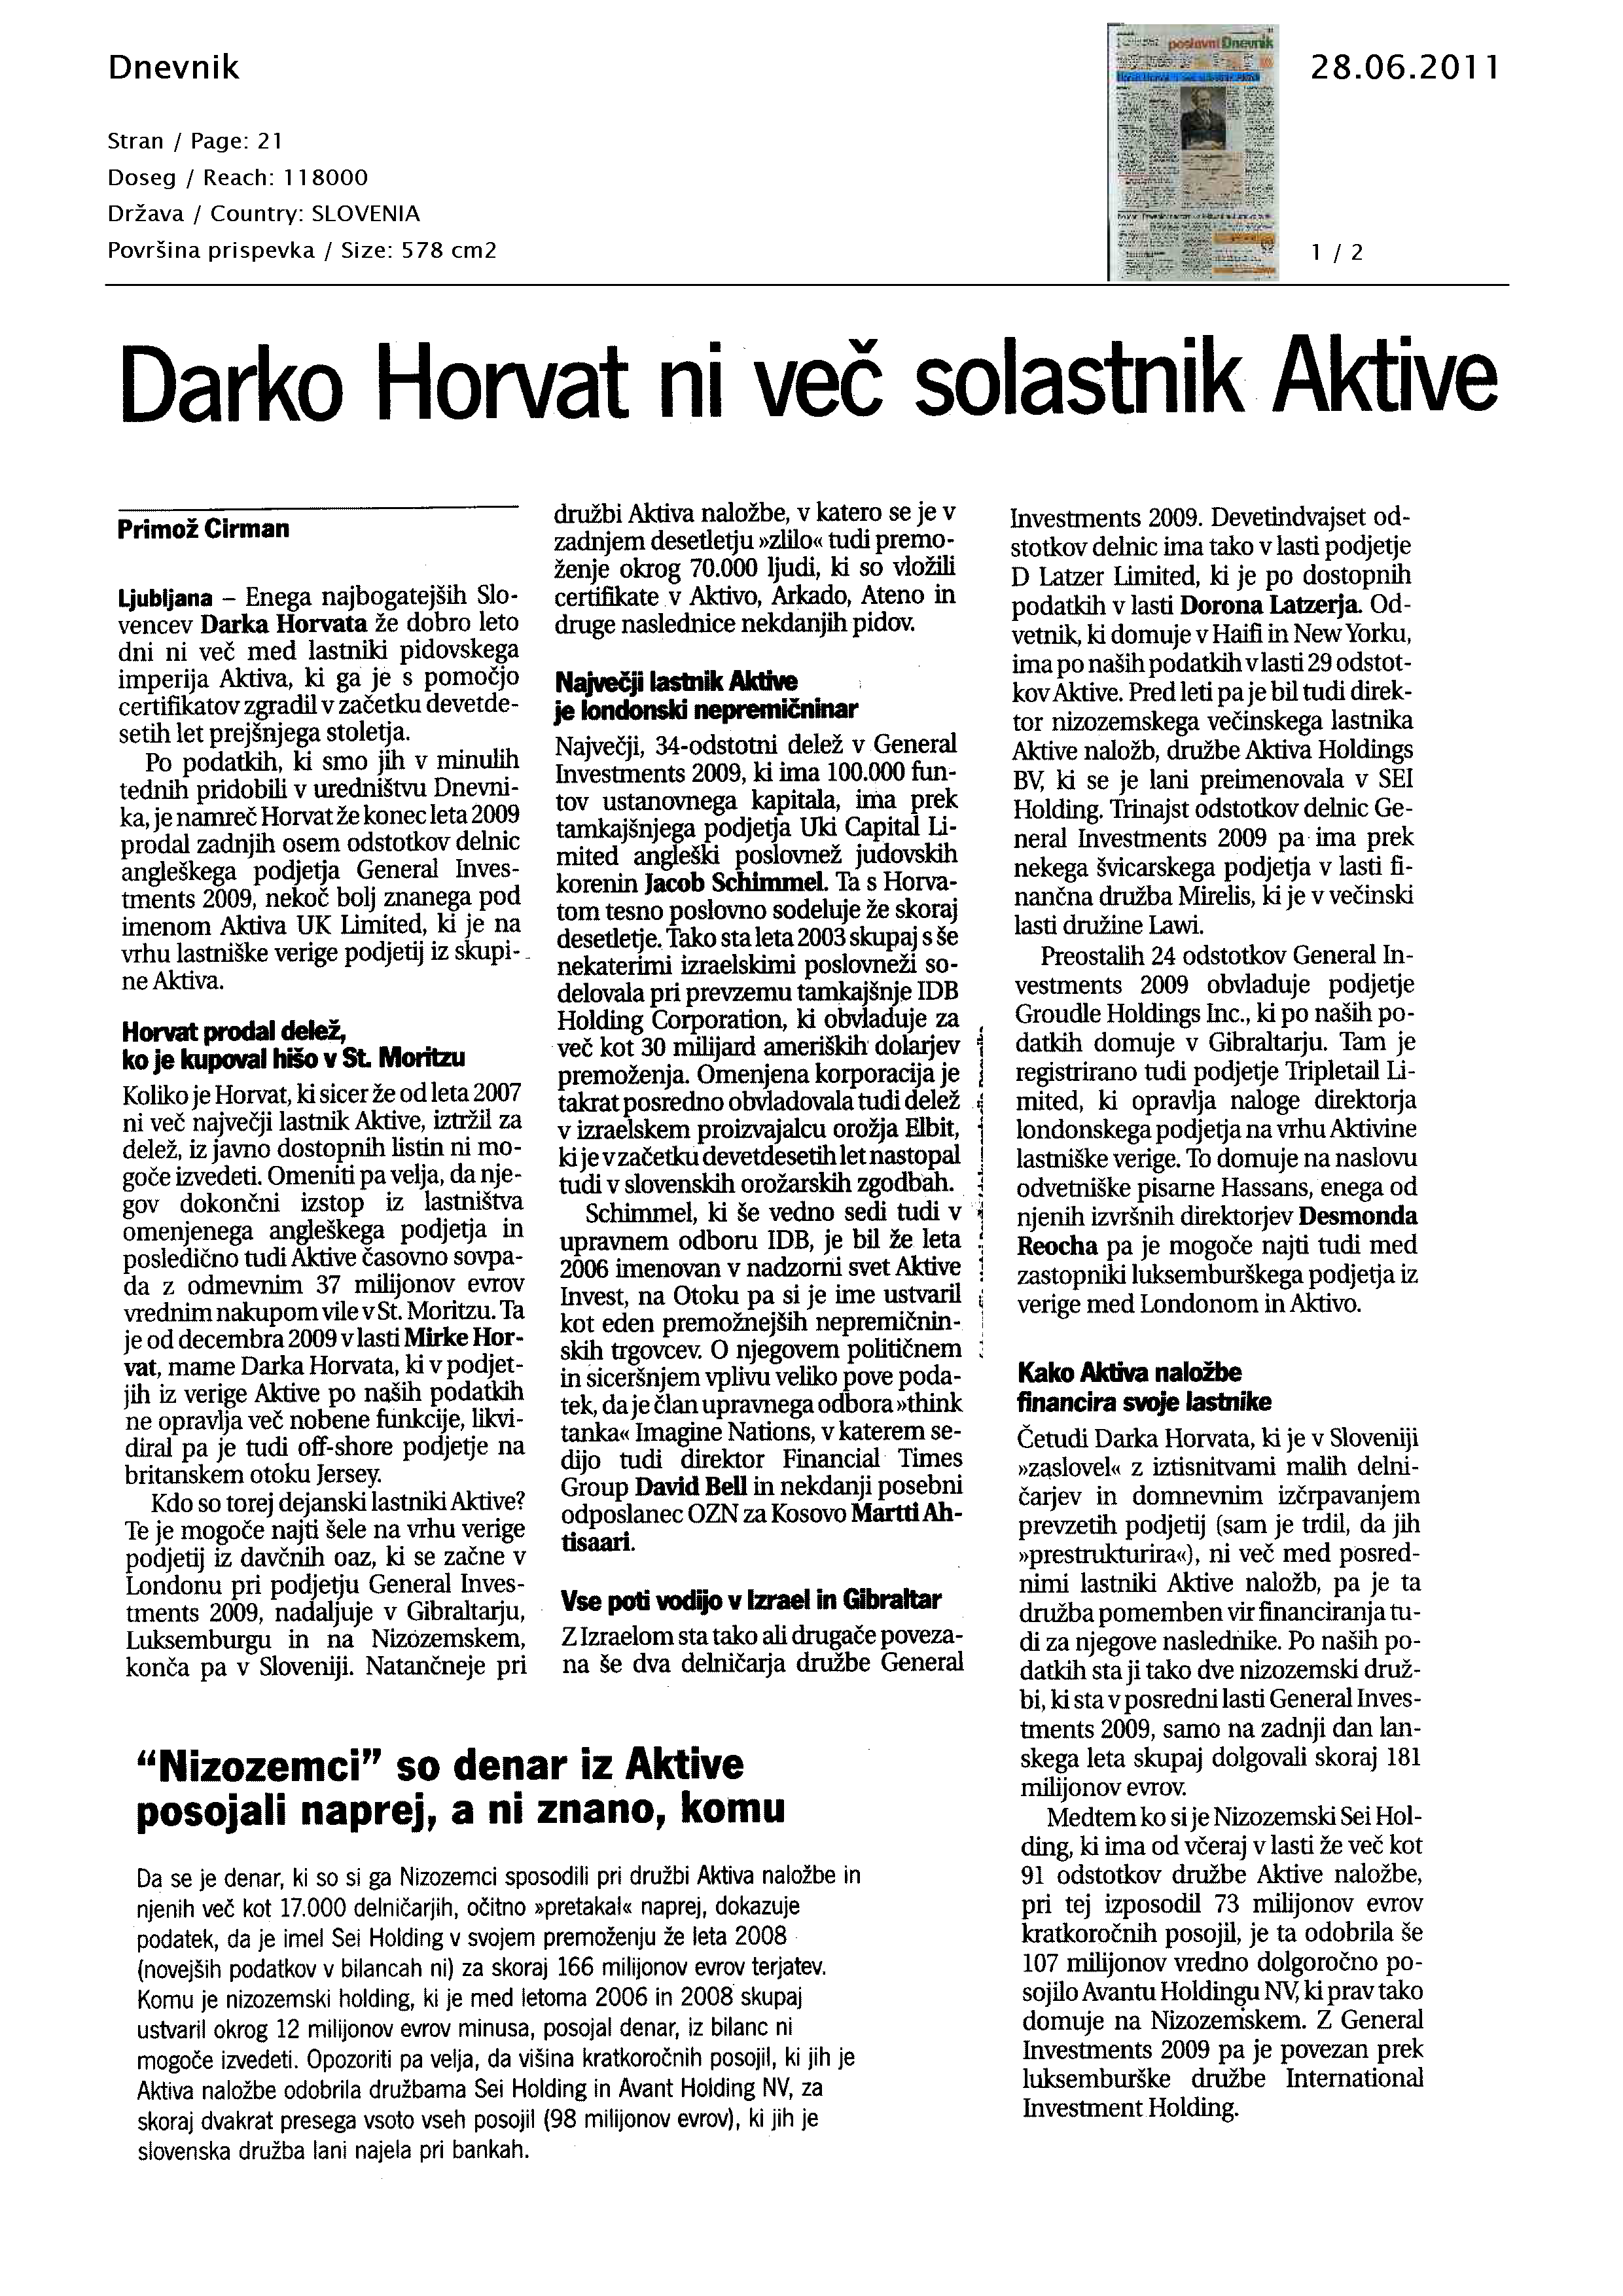 Darko Horvat ni več solastnik Aktive